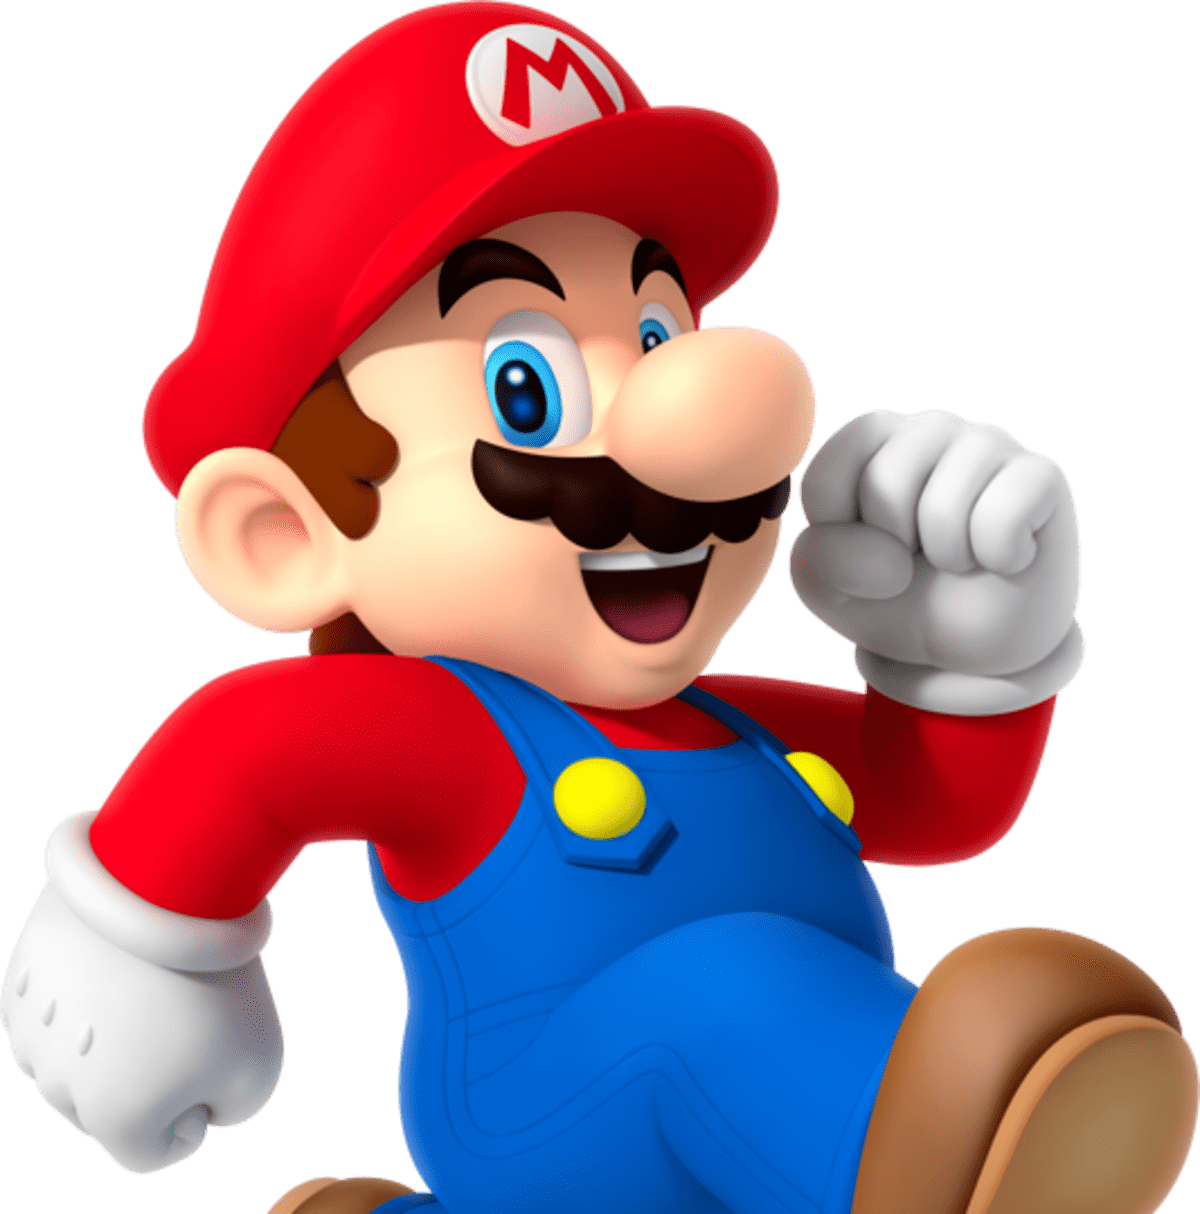 Image of Mario walking